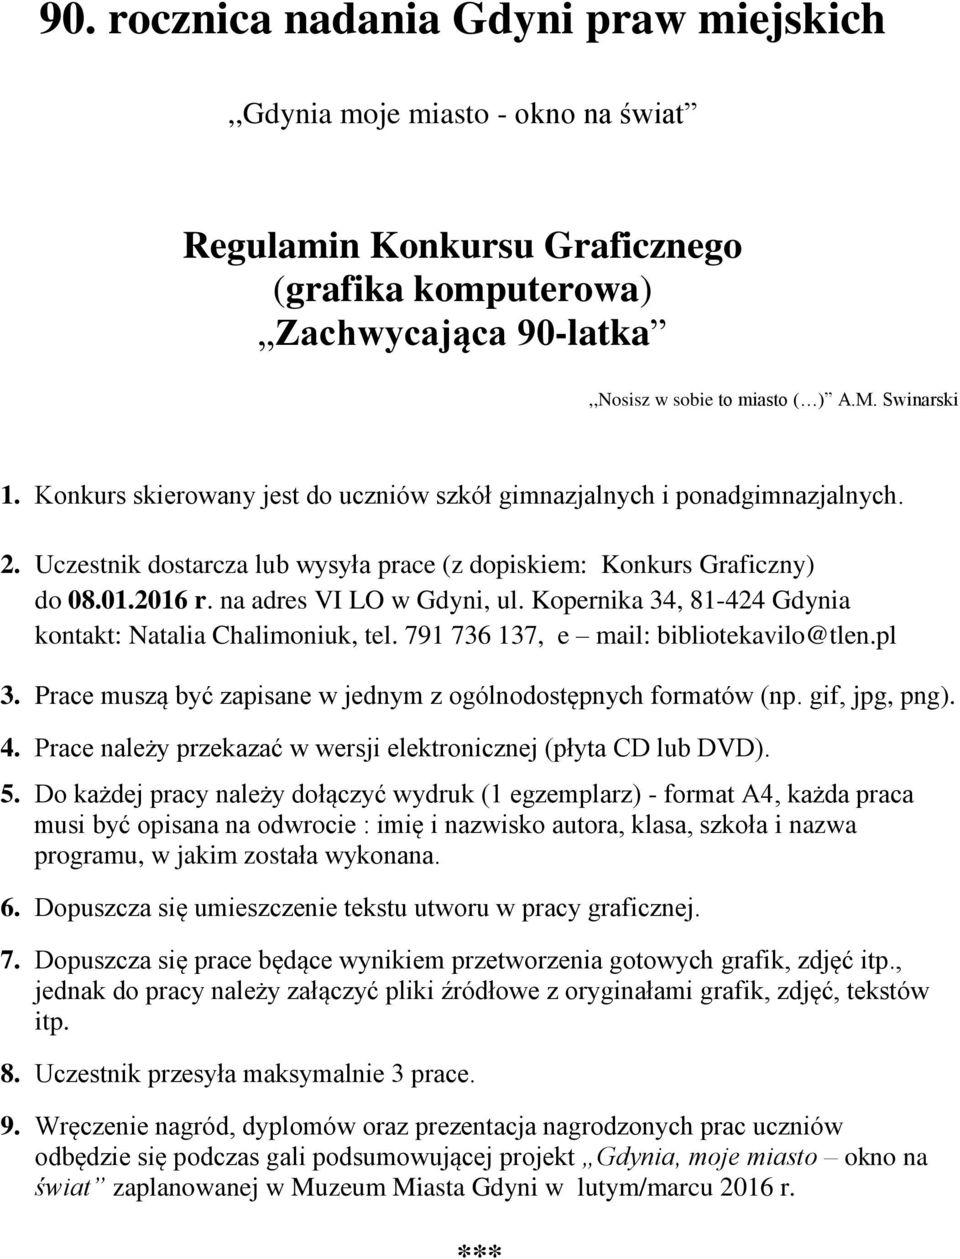 Kopernika 34, 81-424 Gdynia kontakt: Natalia Chalimoniuk, tel. 791 736 137, e mail: bibliotekavilo@tlen.pl 3. Prace muszą być zapisane w jednym z ogólnodostępnych formatów (np. gif, jpg, png). 4.